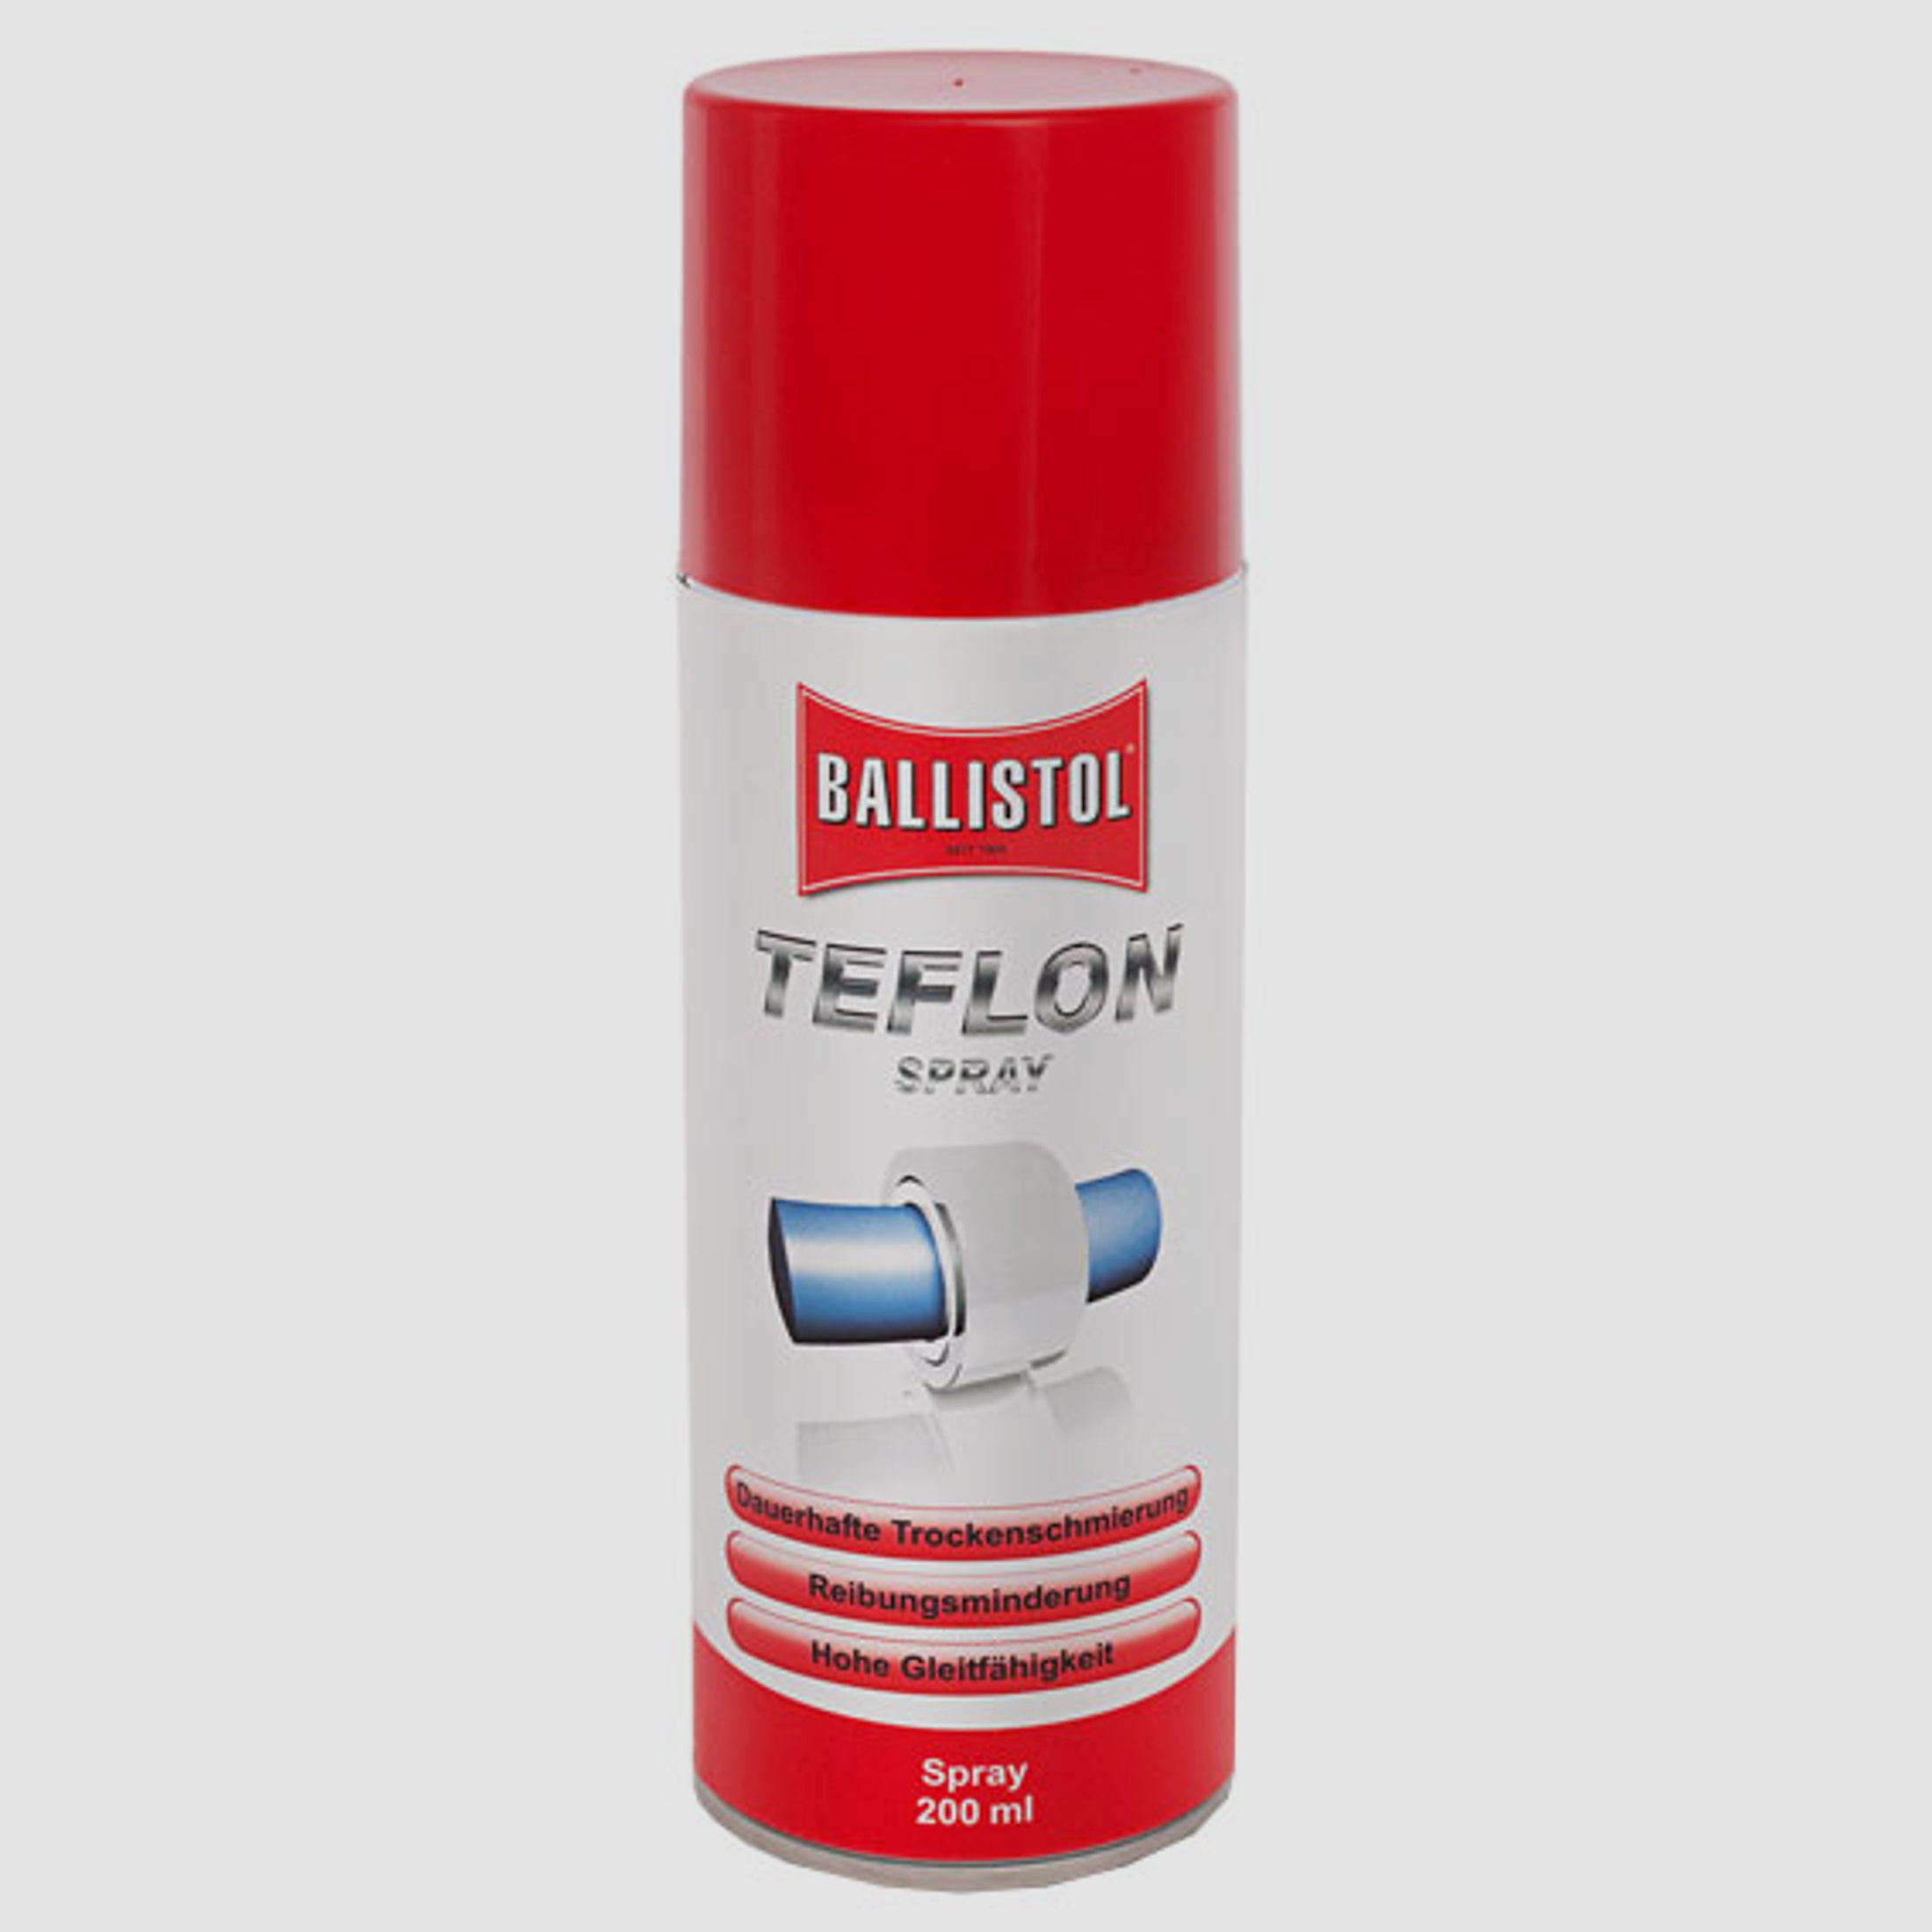 Klever Ballistol Teflon Spray, fĂĽr optimale Trockenschmierung, 200 ml